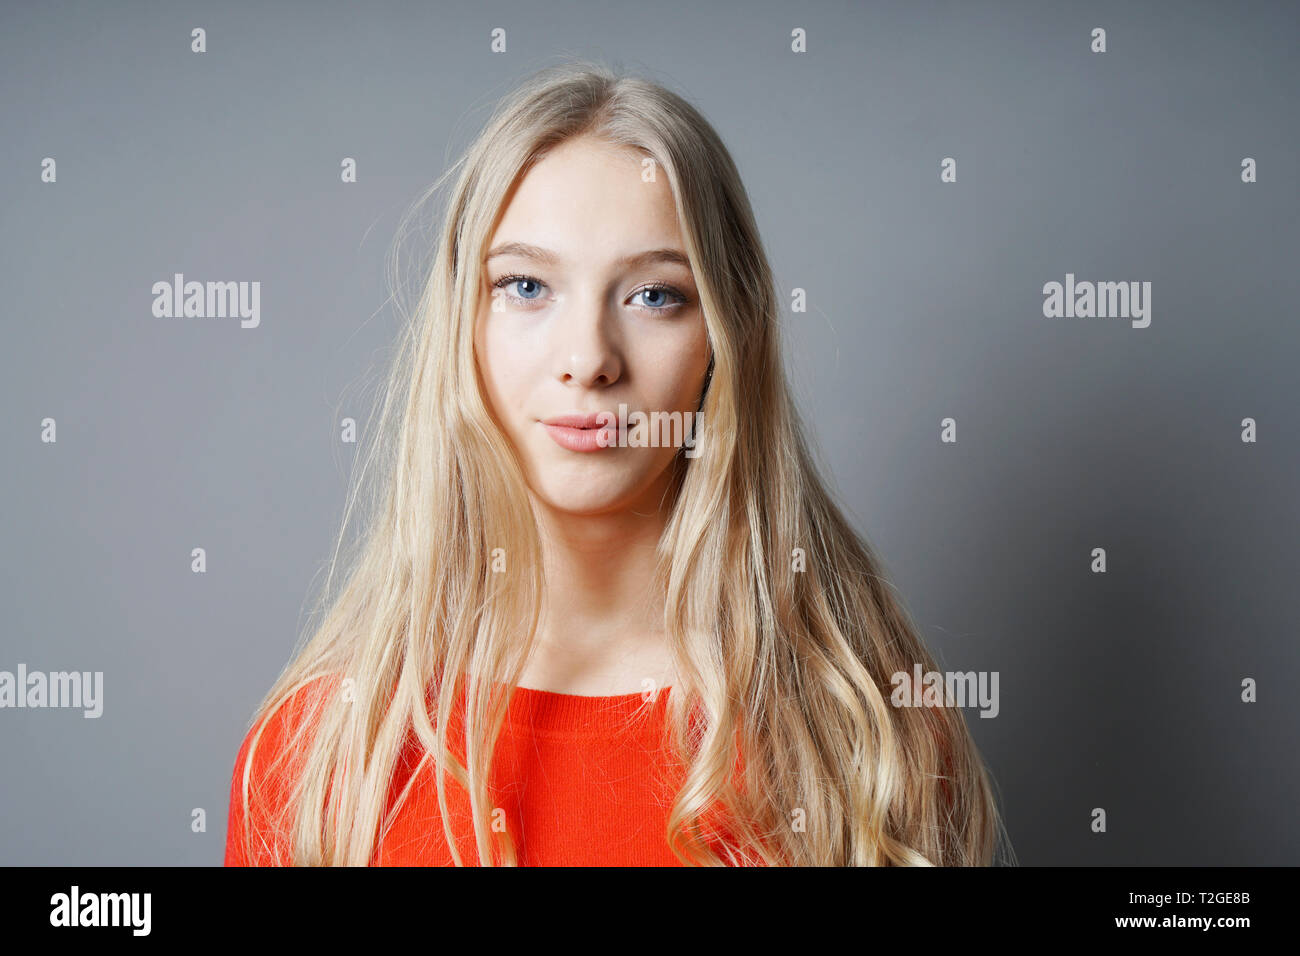 giovane donna con lunghi capelli biondi e occhi blu Foto Stock